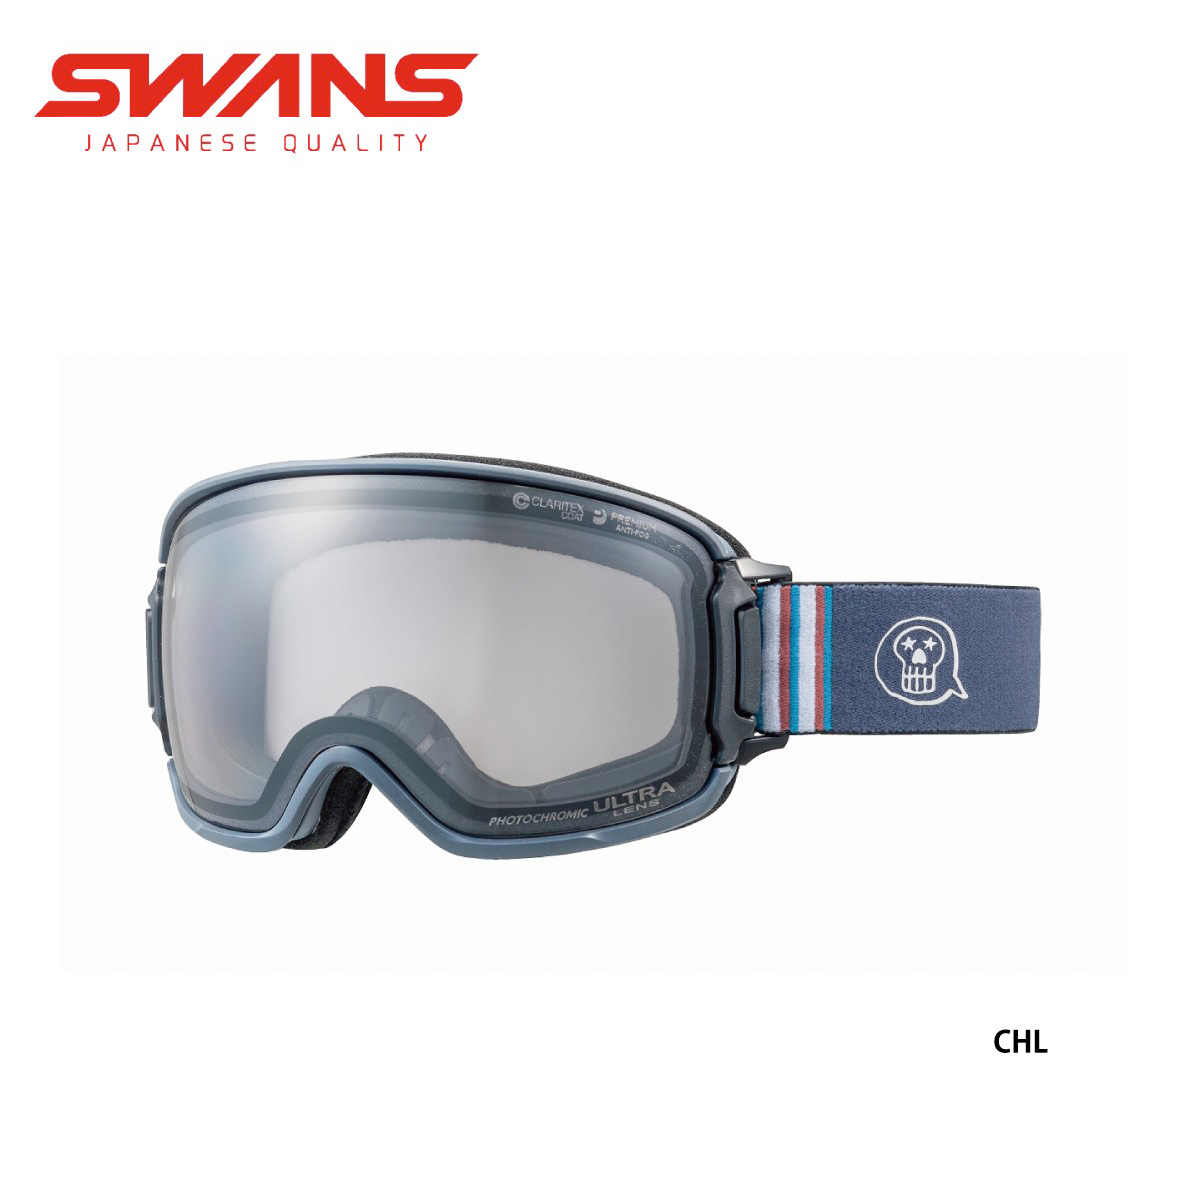 SWANS】20-21モデル スキーゴーグル 【驚きの値段で】 7200円